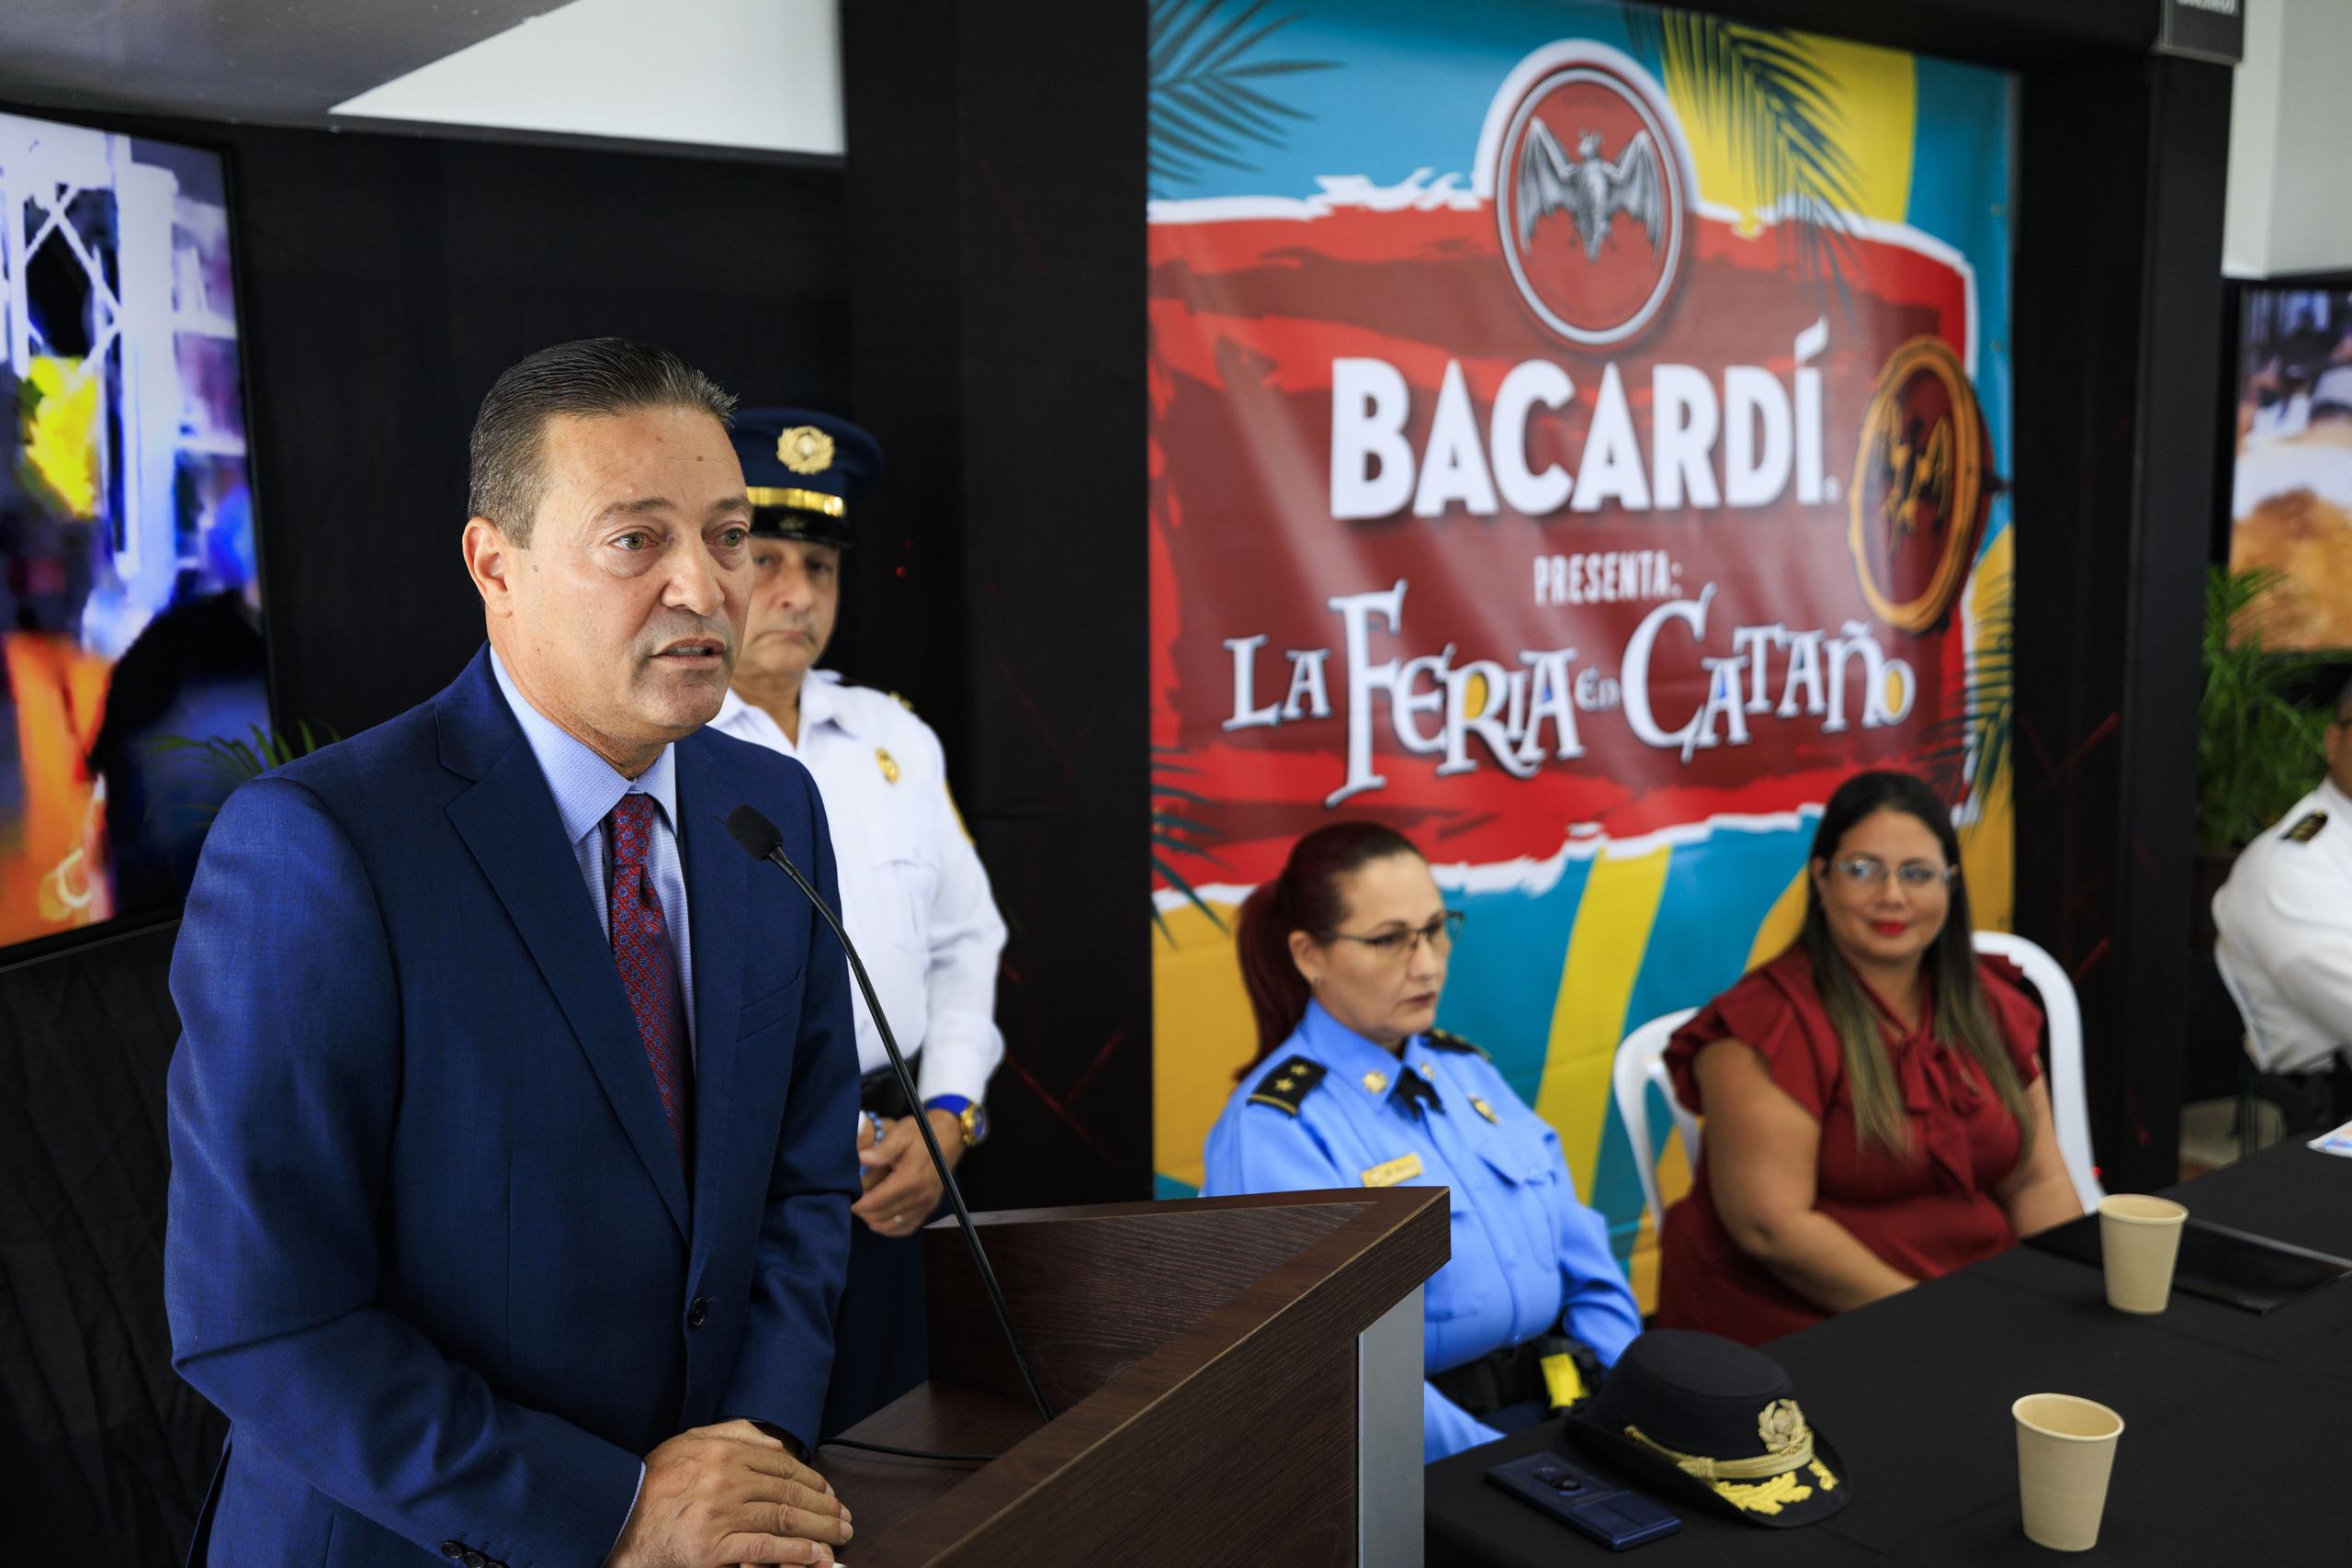 El alcalde de Cataño ofrece detalles del evento.